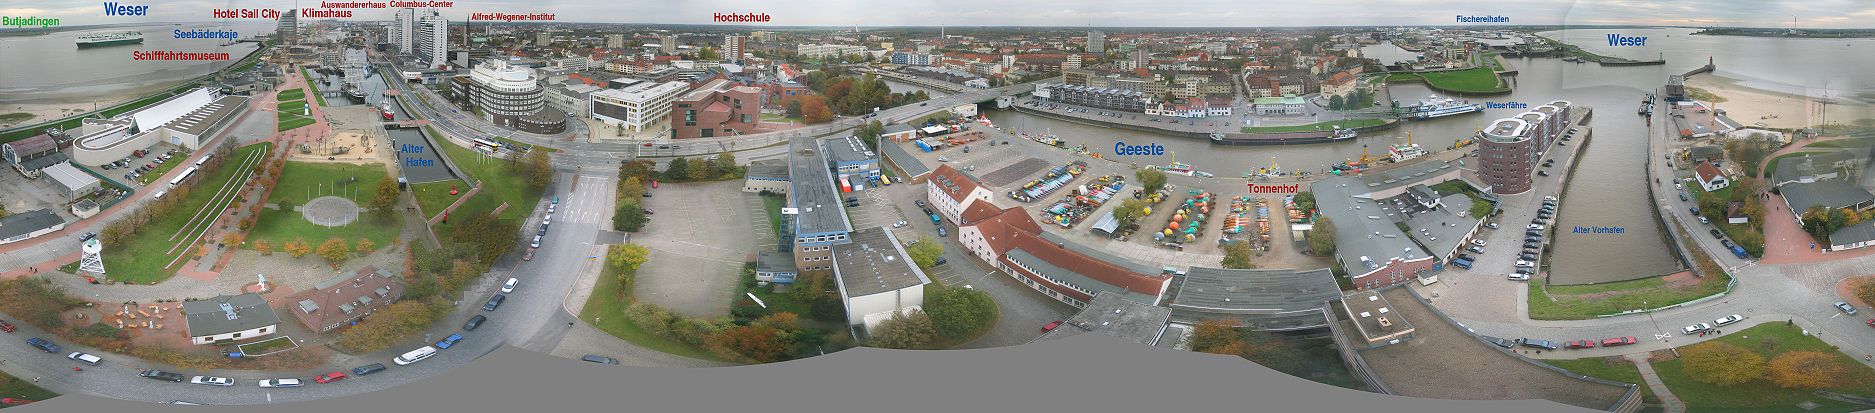 Panorama von Bremerhaven, vom Radarturm aus aufgenommen. Im linken Teil das Zentrum mit „Columbus-Center“ und den in Bau befindlichen Havenwelten